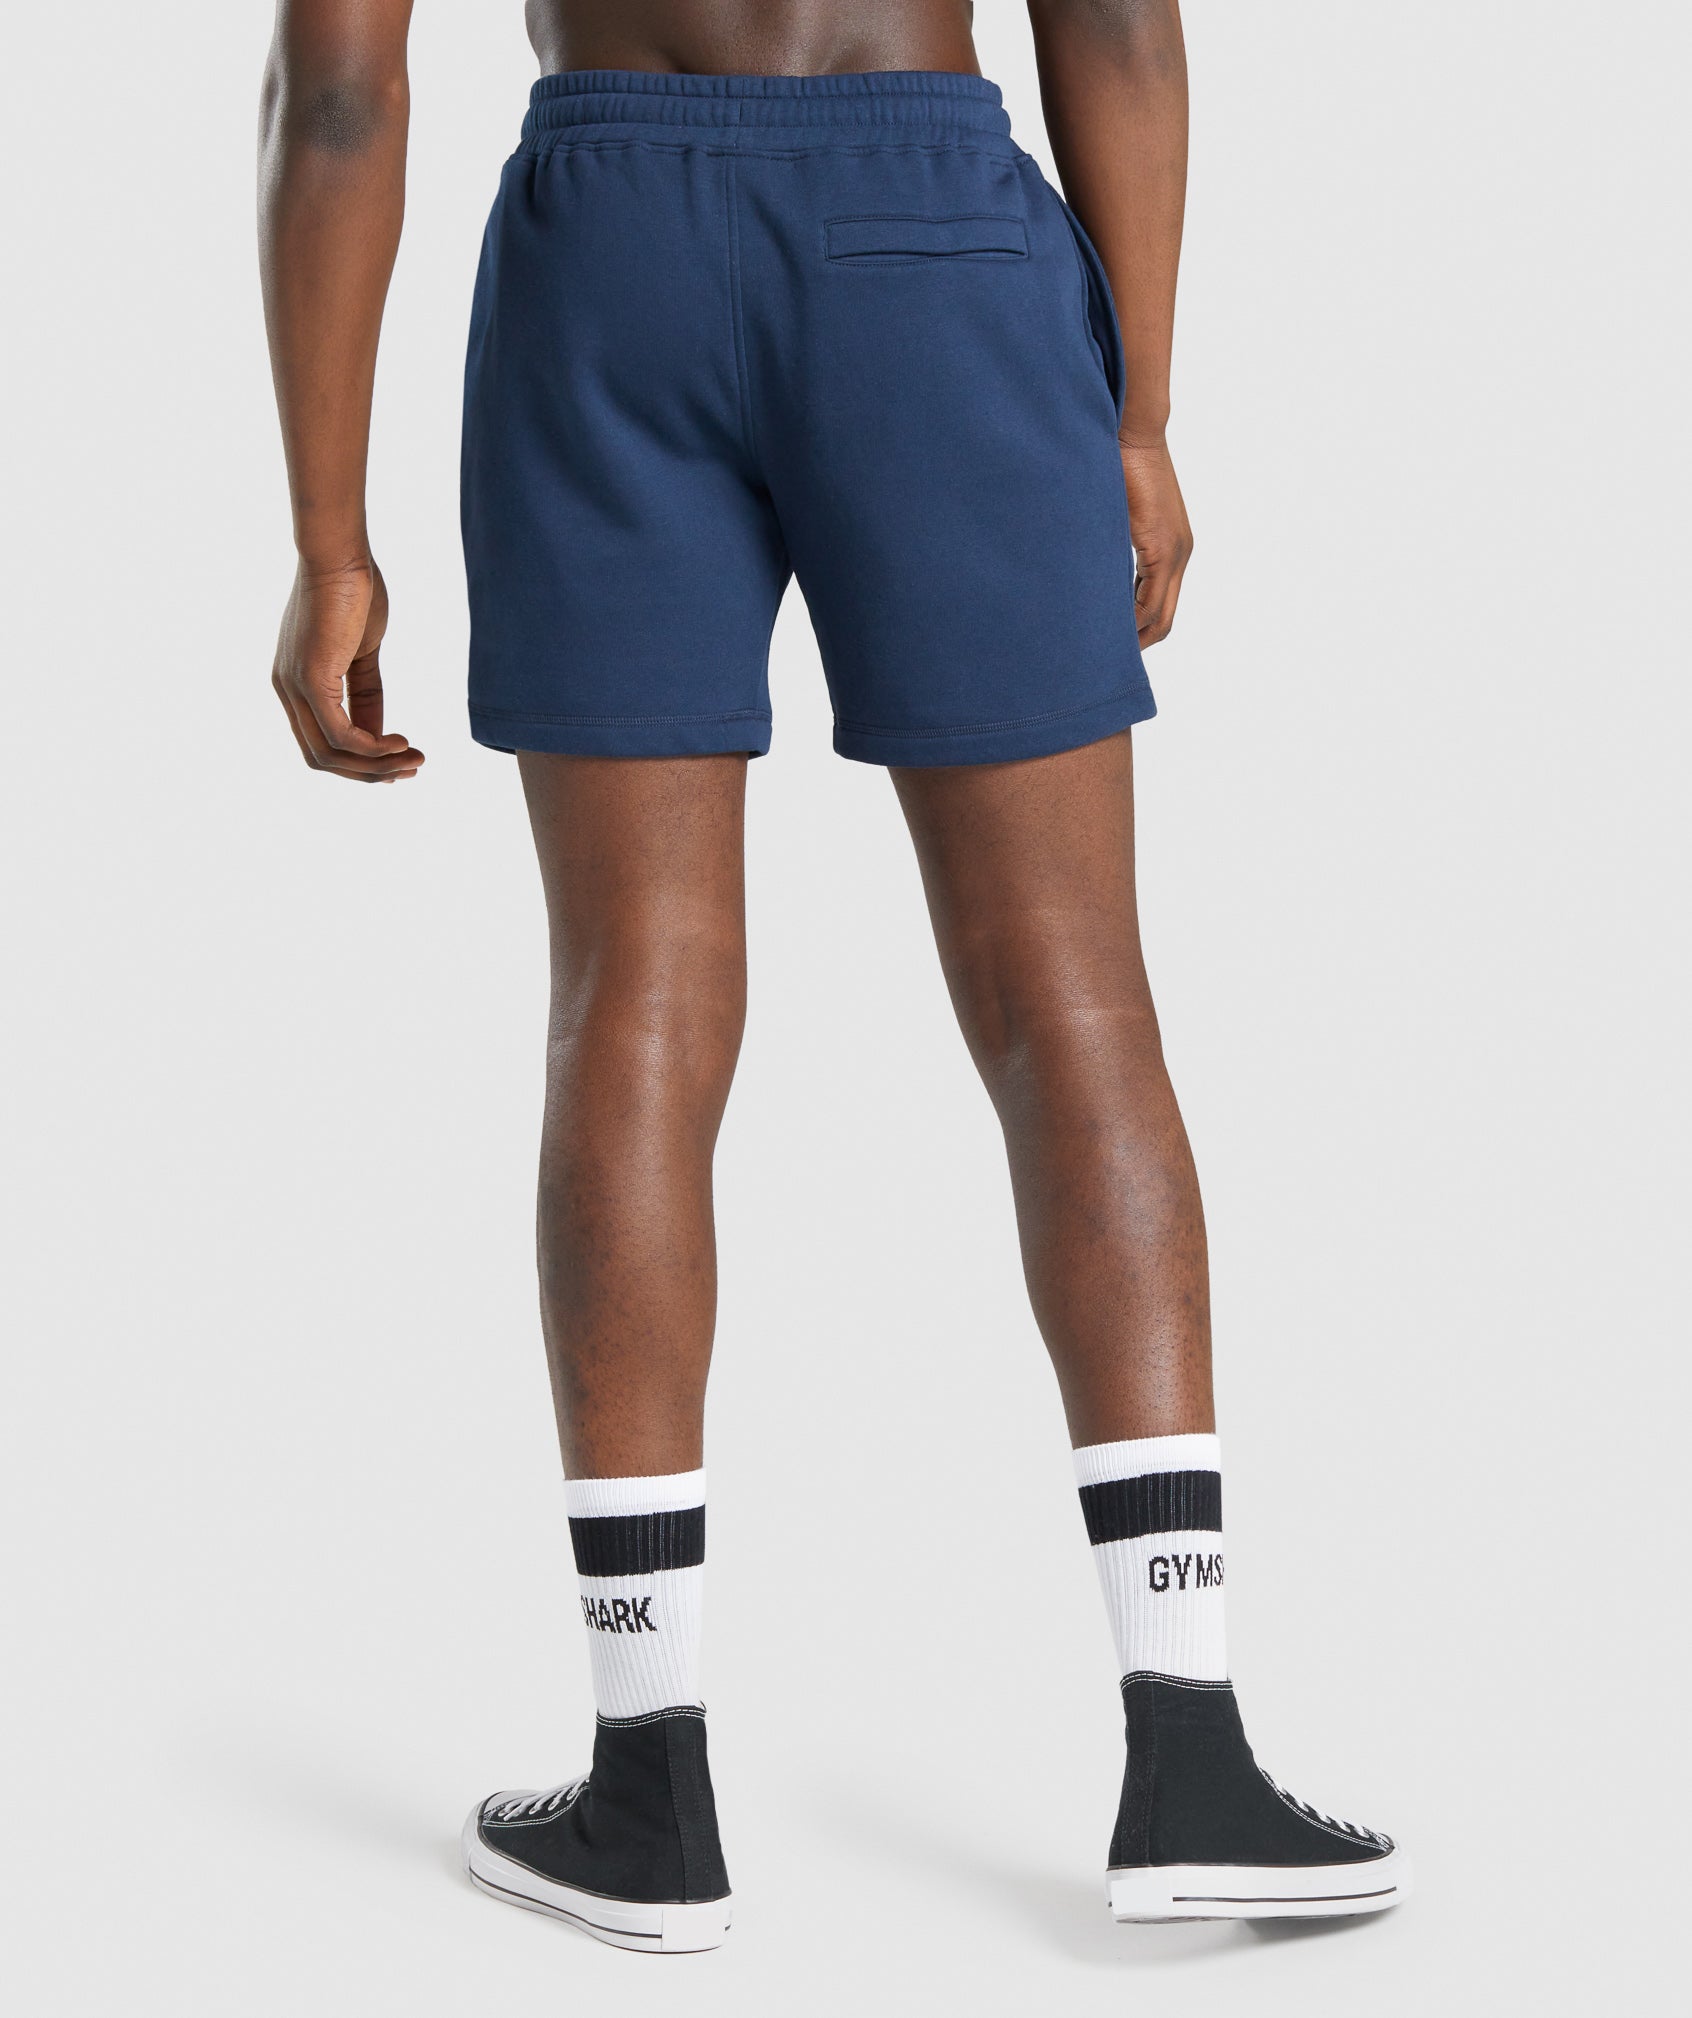 Crest Shorts in Navy